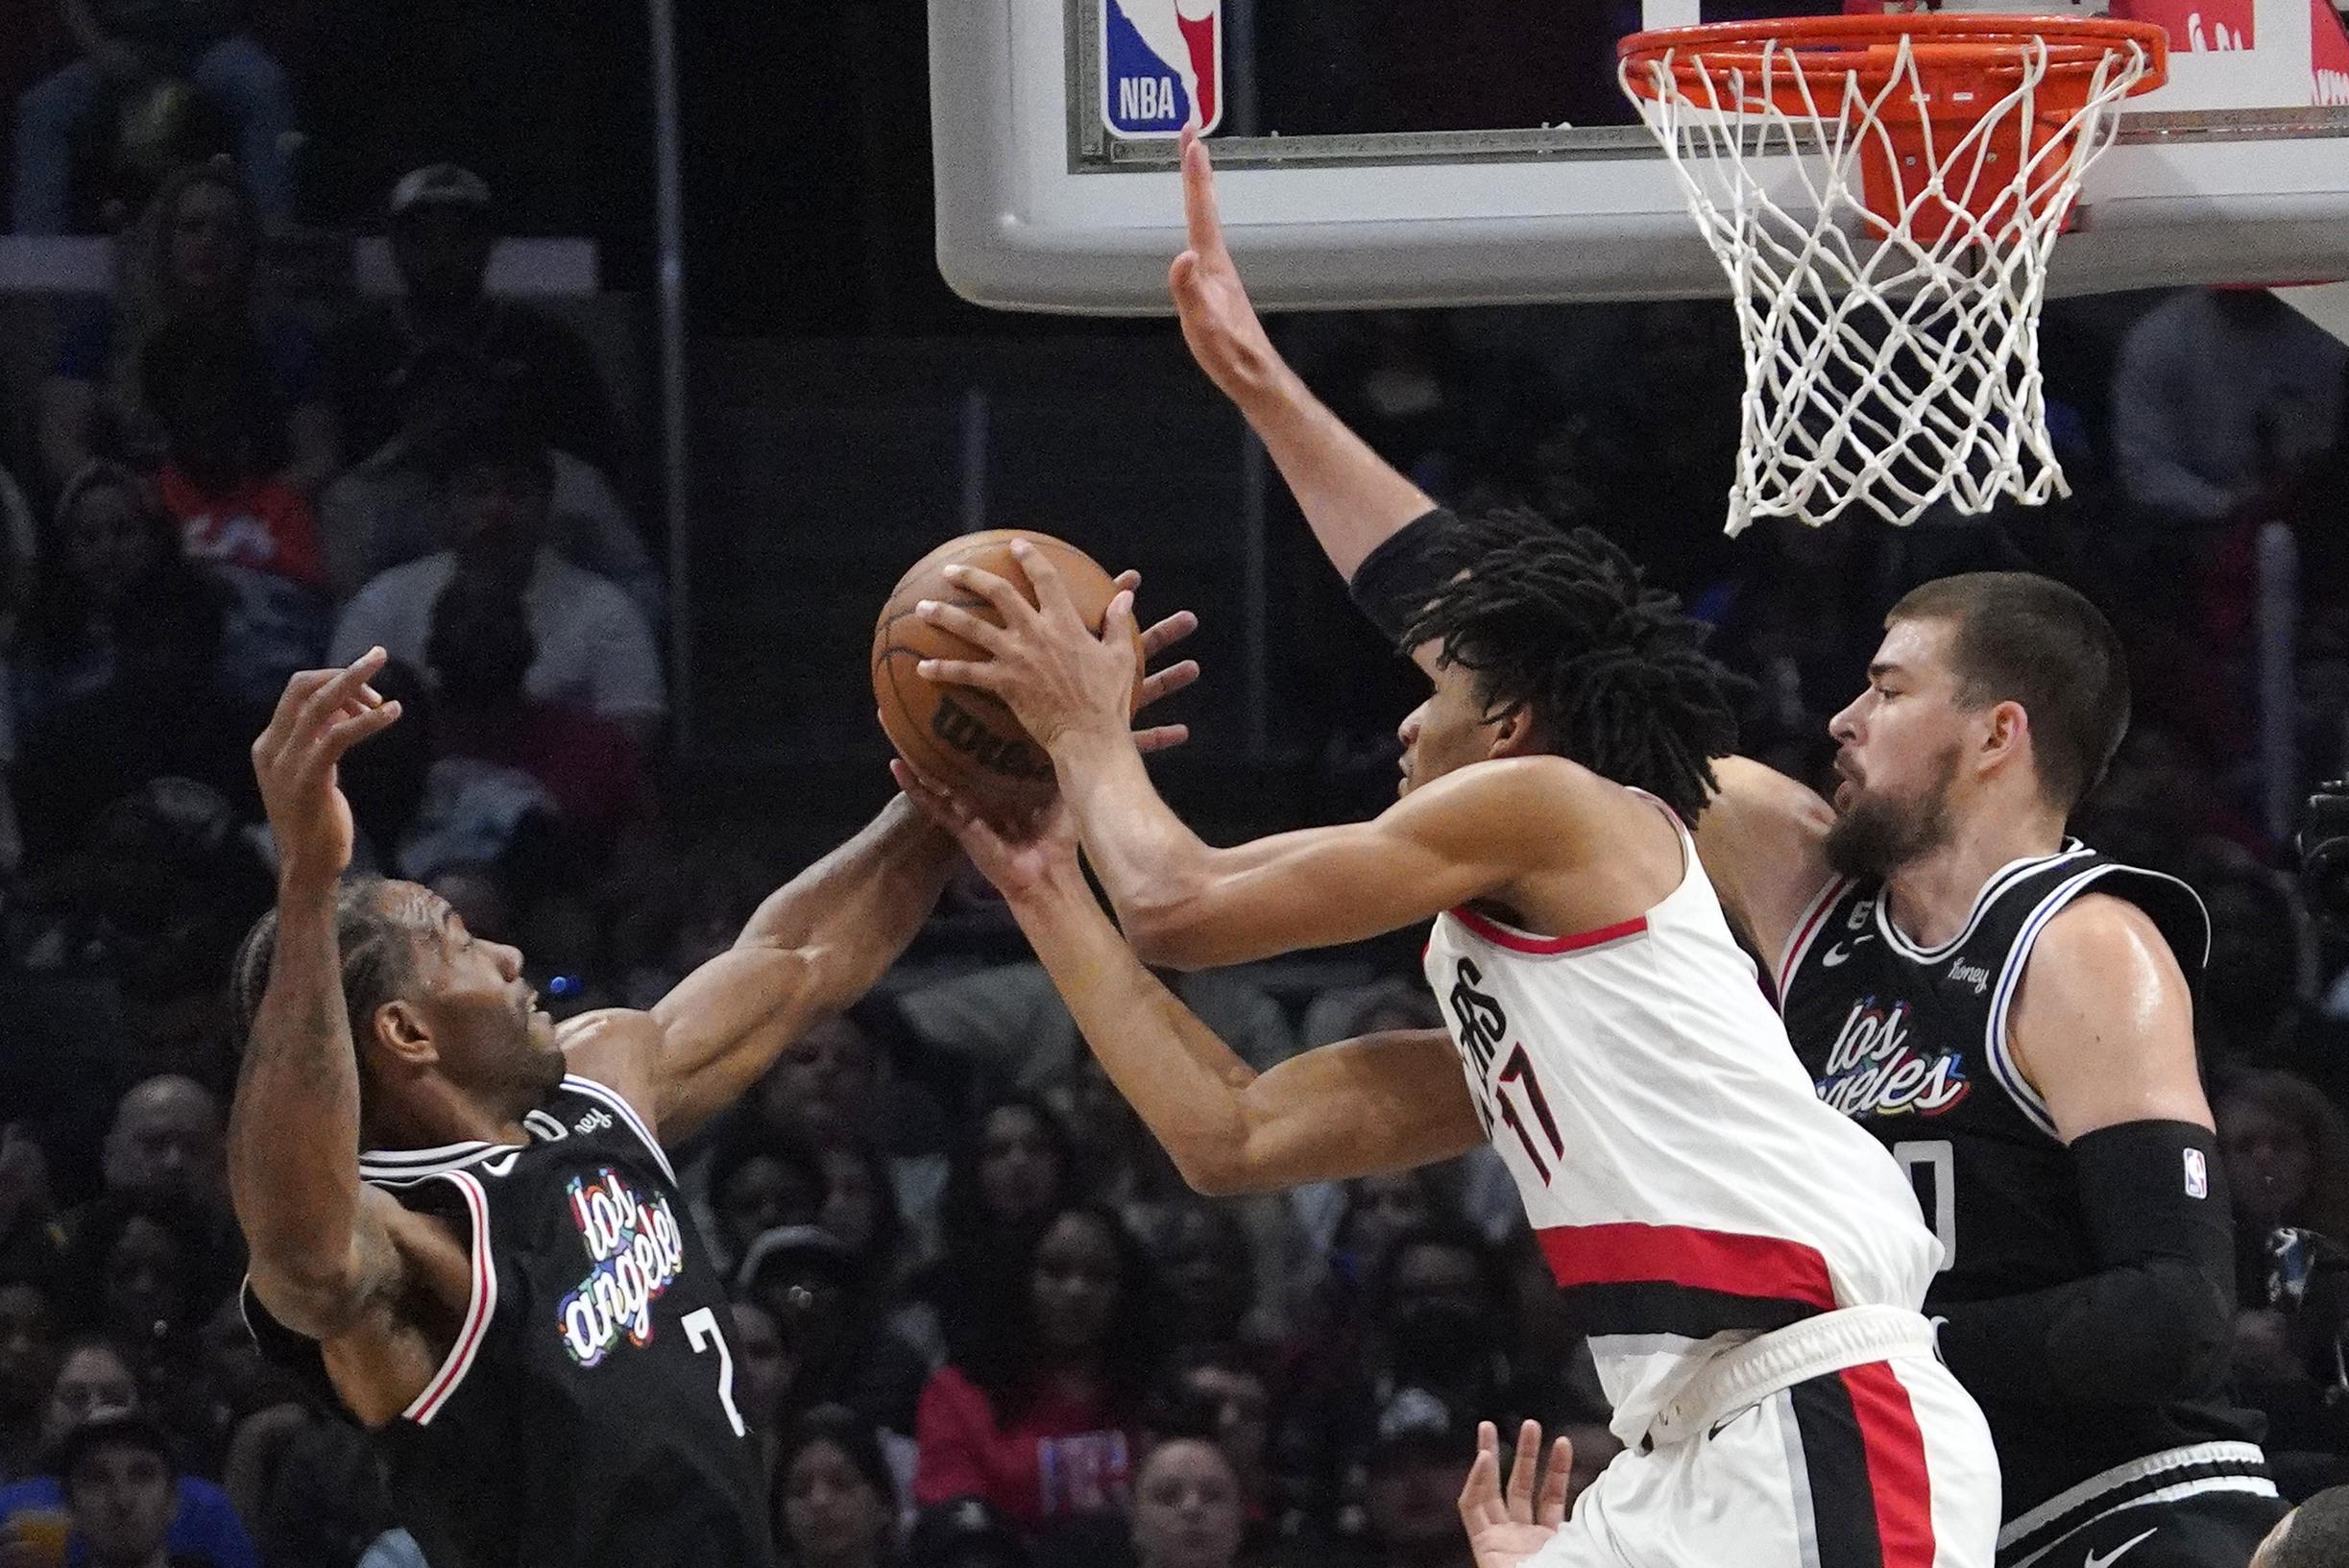 VIDEO. Nikola Jokic steelt de show met onorthodoxe no-look pass, Clippers en Timberwolves boeken belangrijke overwinningen in NBA